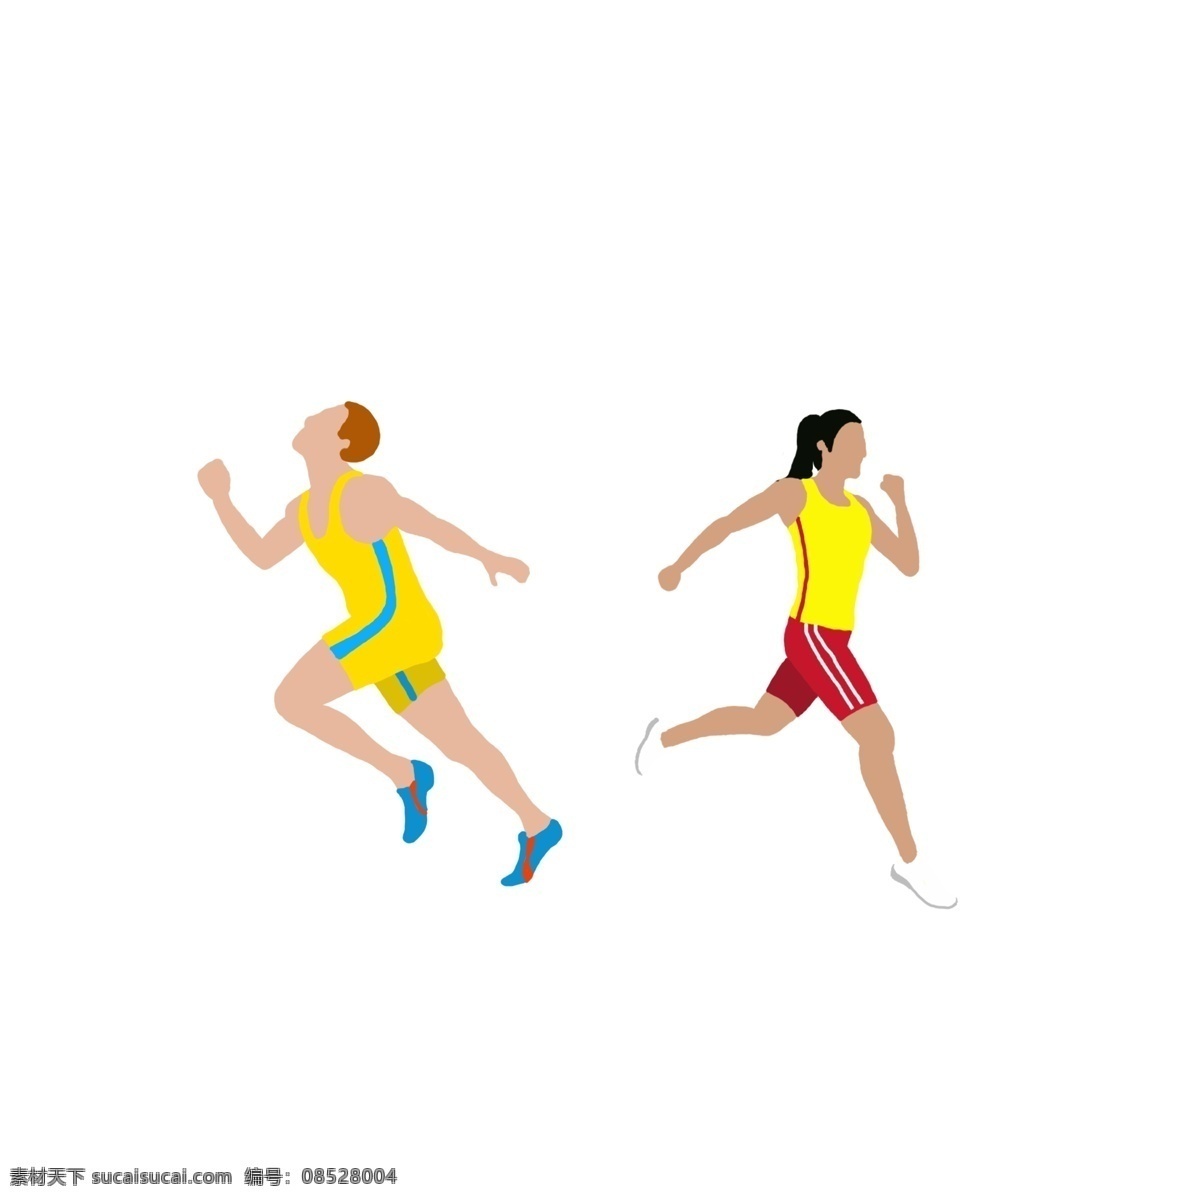 卡通 运动 跑步 人 矢量图 健身 长跑 短跑 比赛 运动会 简单 小清新风格